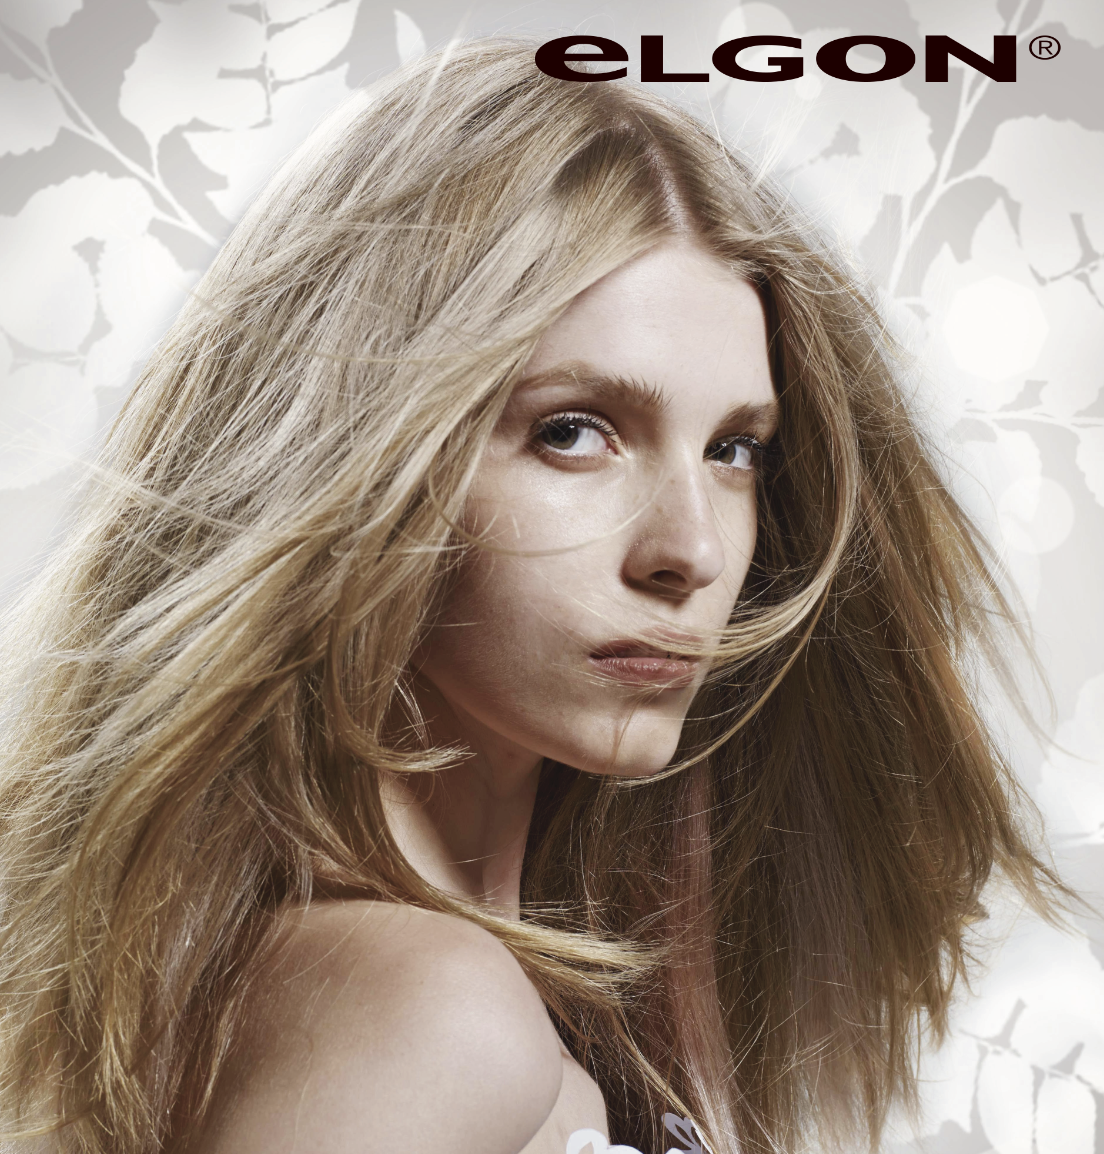 ELGON Hair care